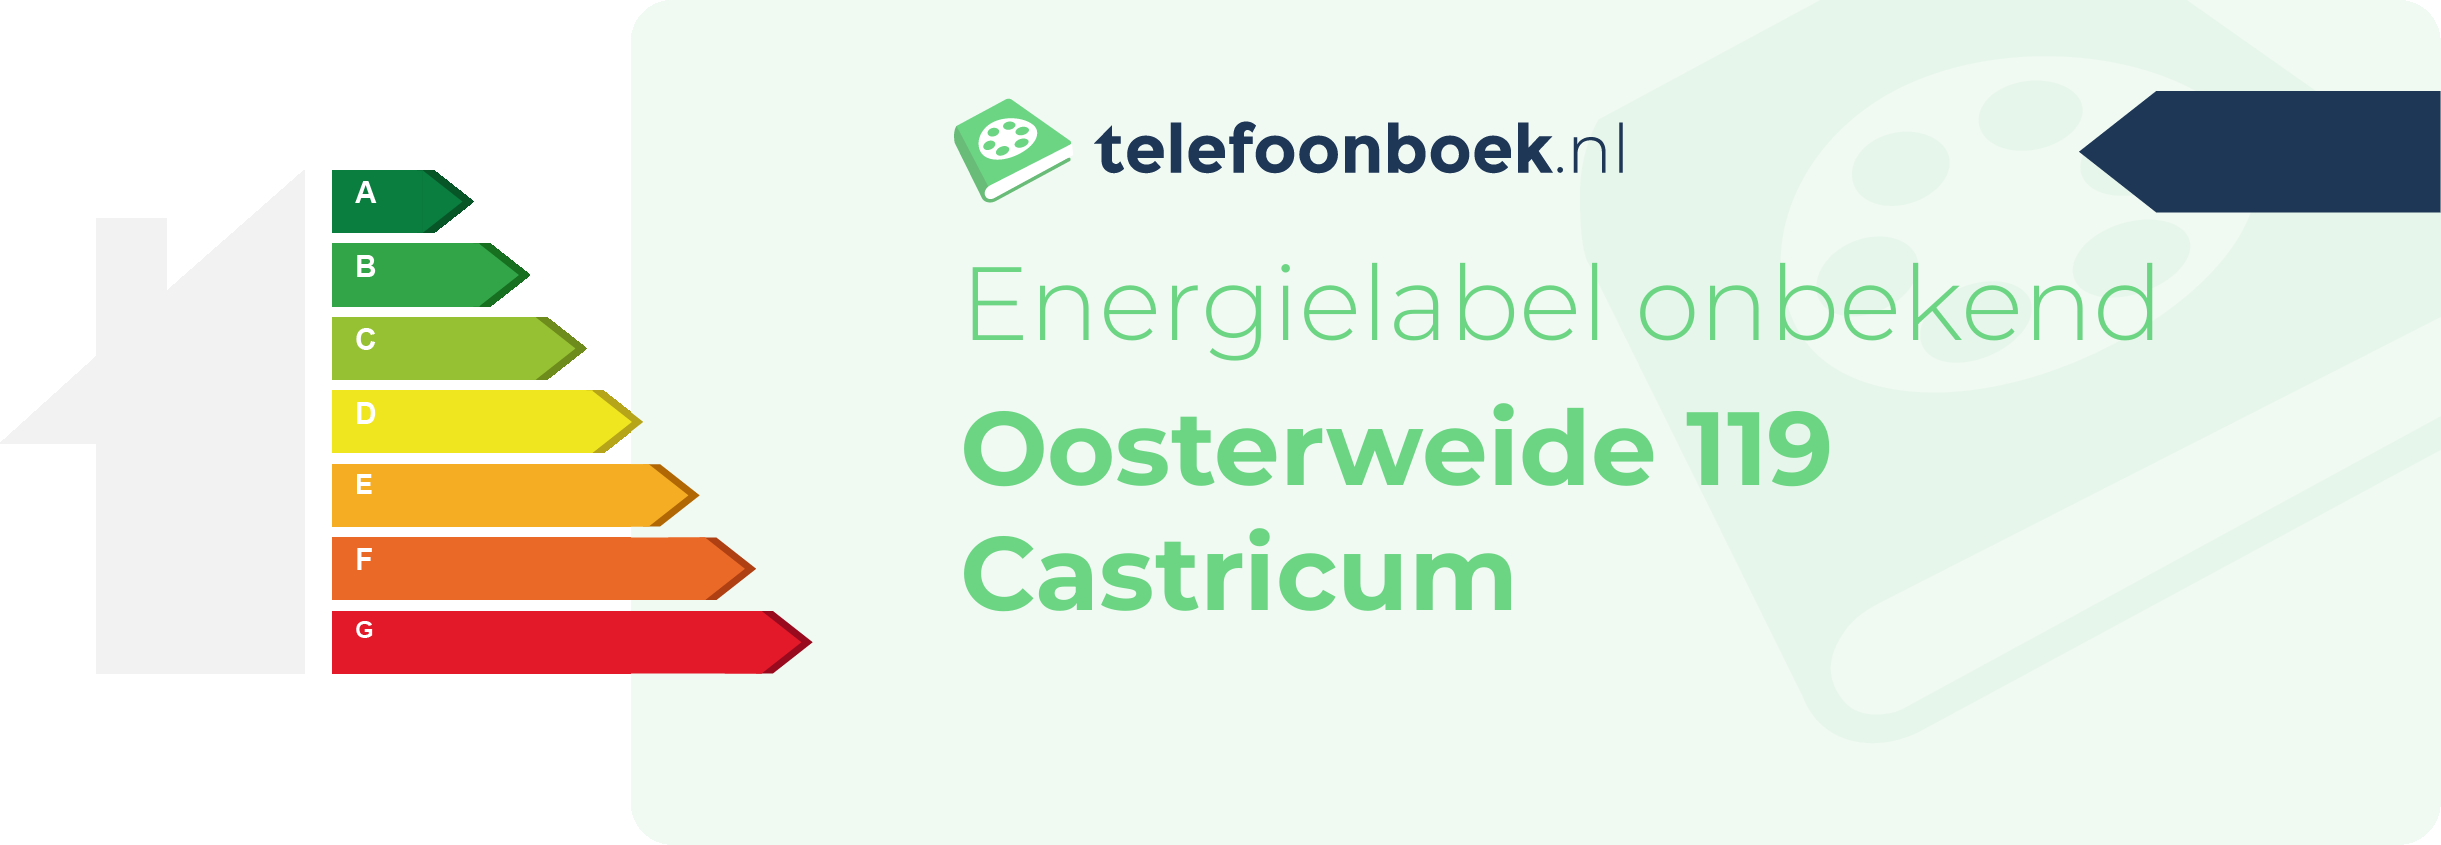 Energielabel Oosterweide 119 Castricum